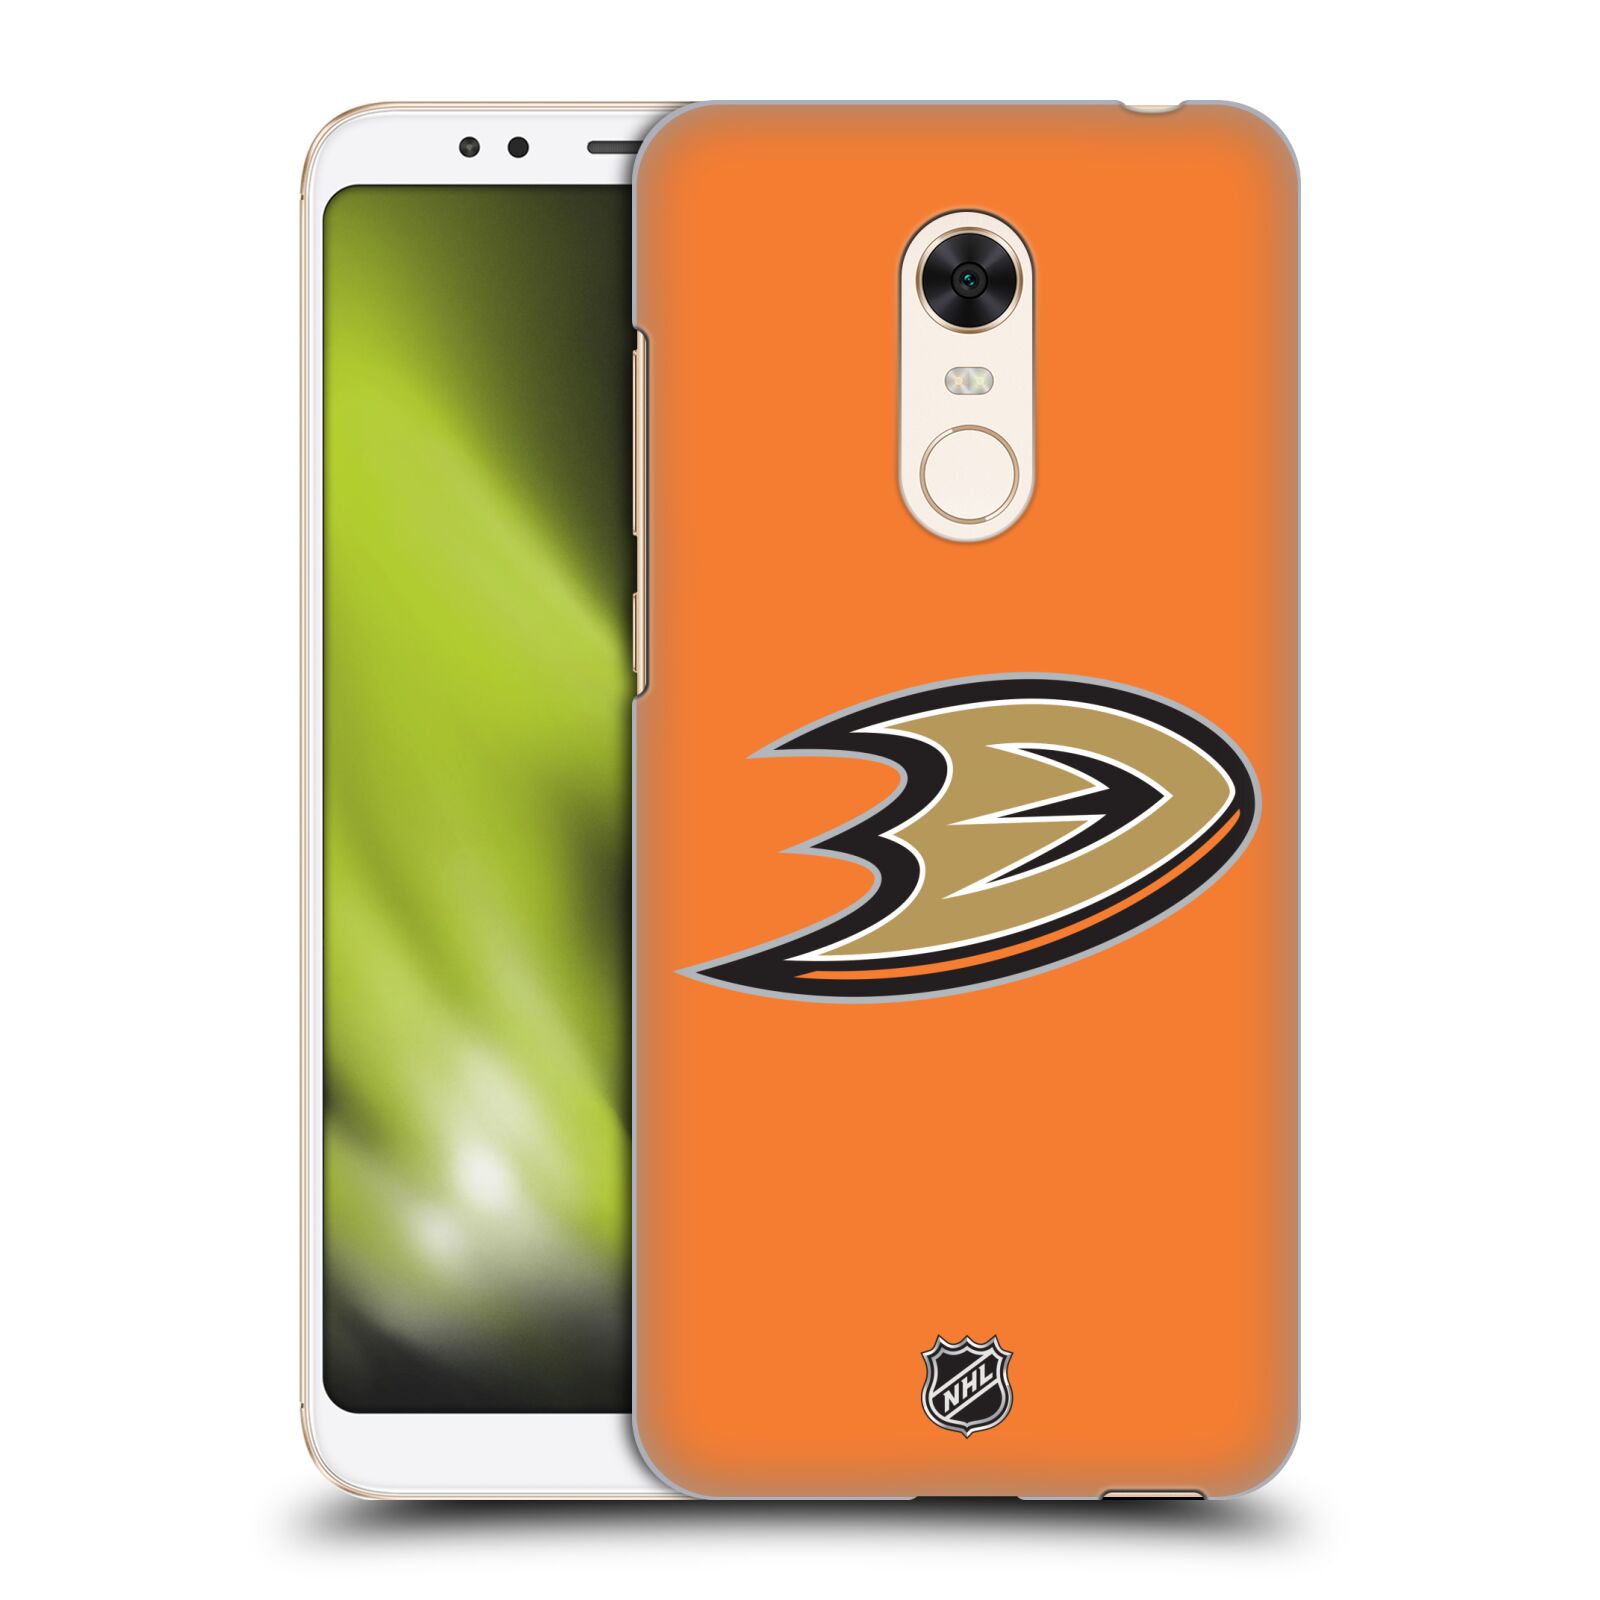 Pouzdro na mobil Xiaomi Redmi 5 PLUS (REDMI 5+) - HEAD CASE - Hokej NHL - Anaheim Ducks - Oranžové pozadí